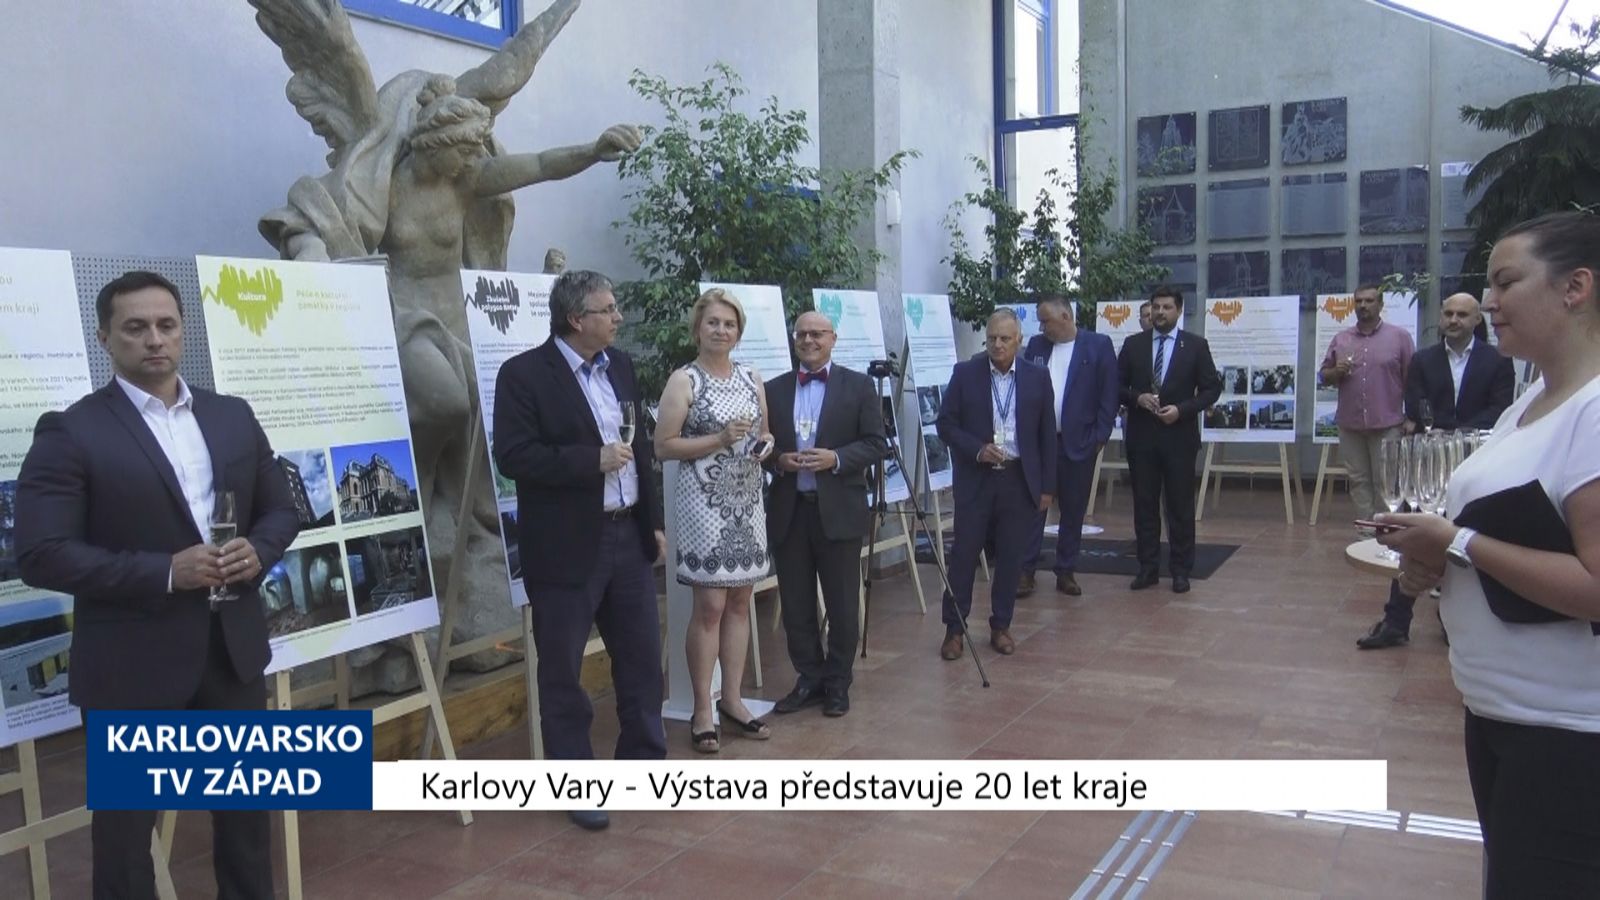 Karlovy Vary: Výstava představuje 20 let kraje (TV Západ)